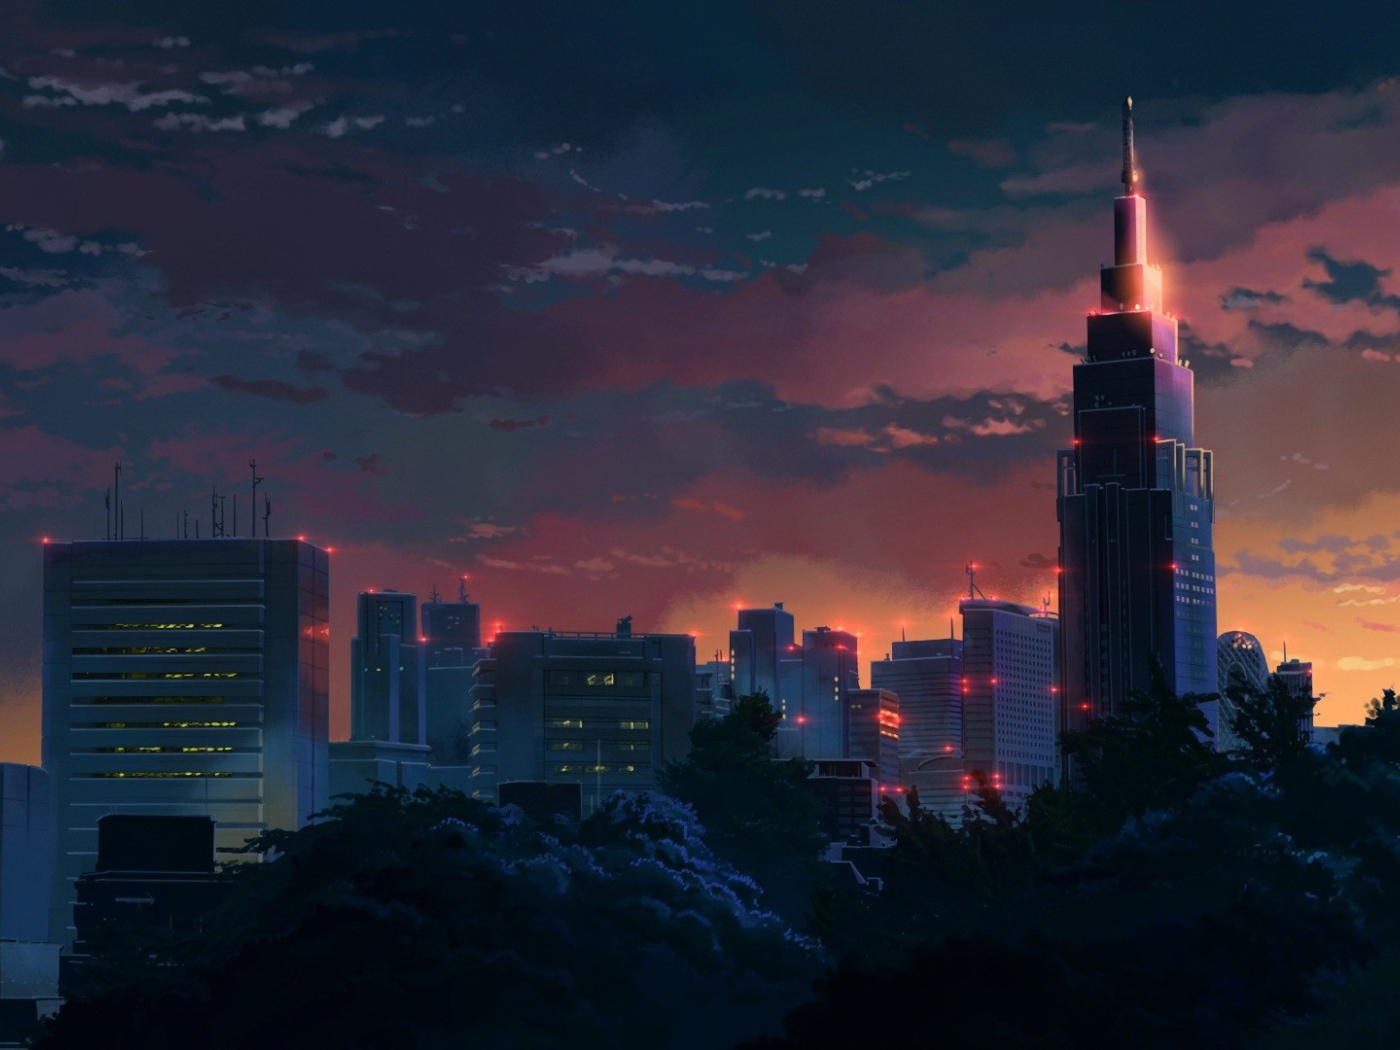 Night city in the anime Garden of Words Desktop wallpapers 1400x1050